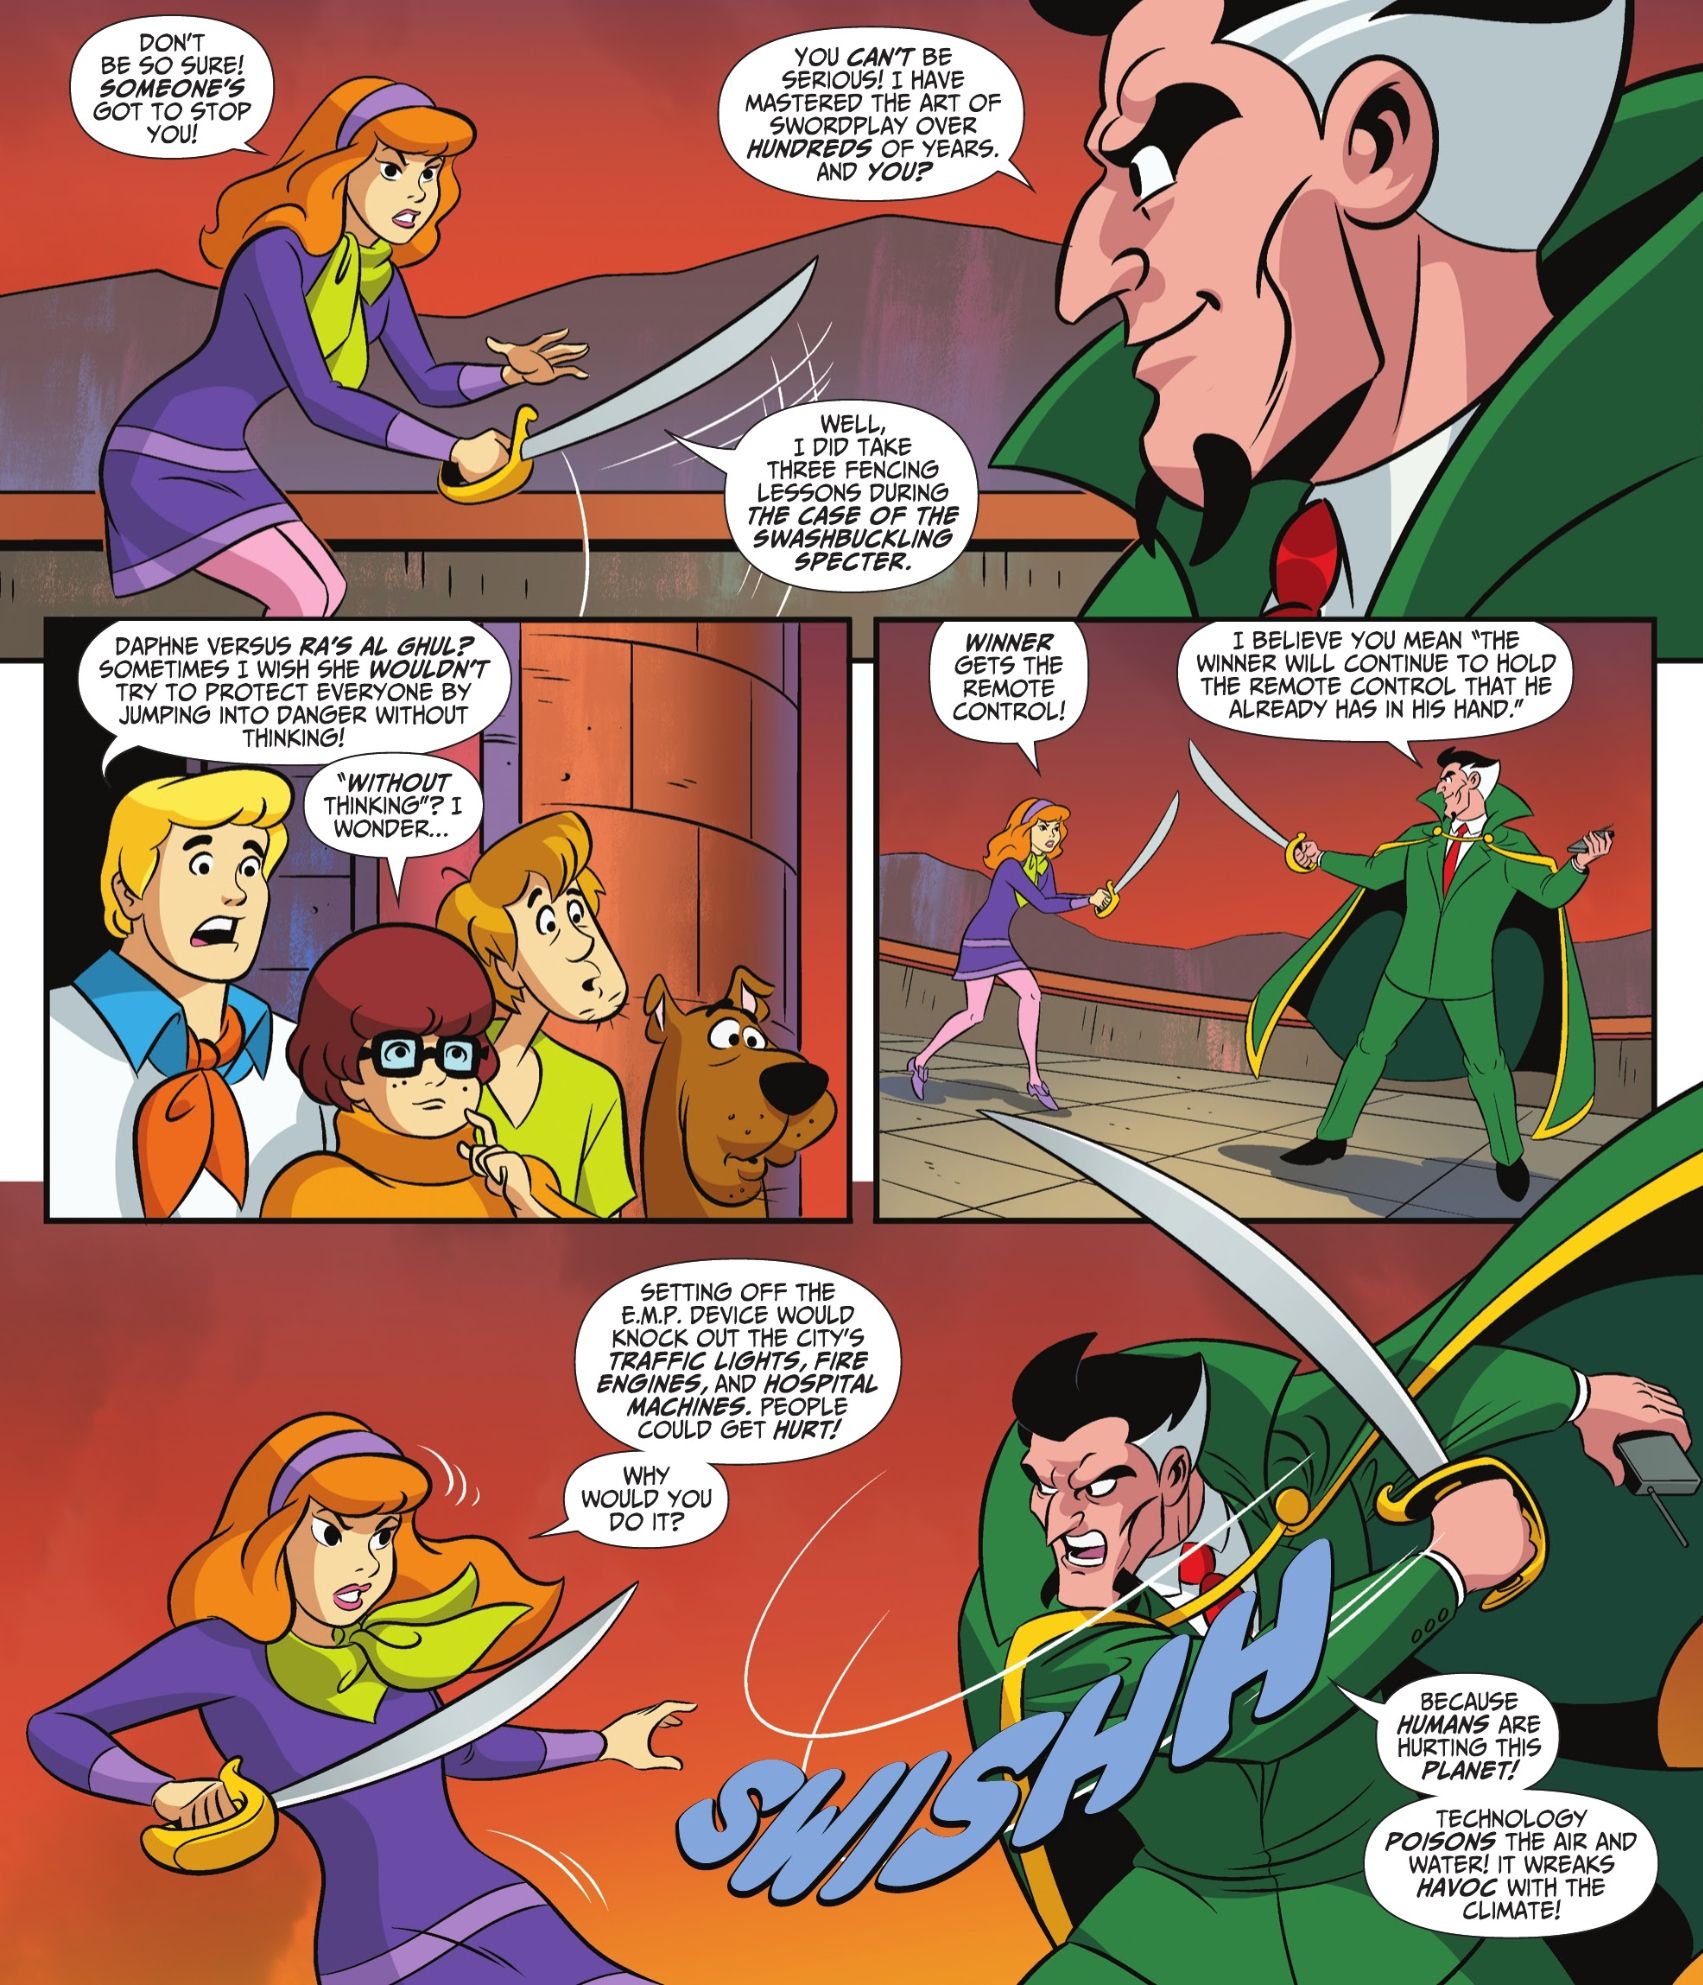 Daphne draws a cutlass and challenges Batman villain Ra's al Ghul to a duel.